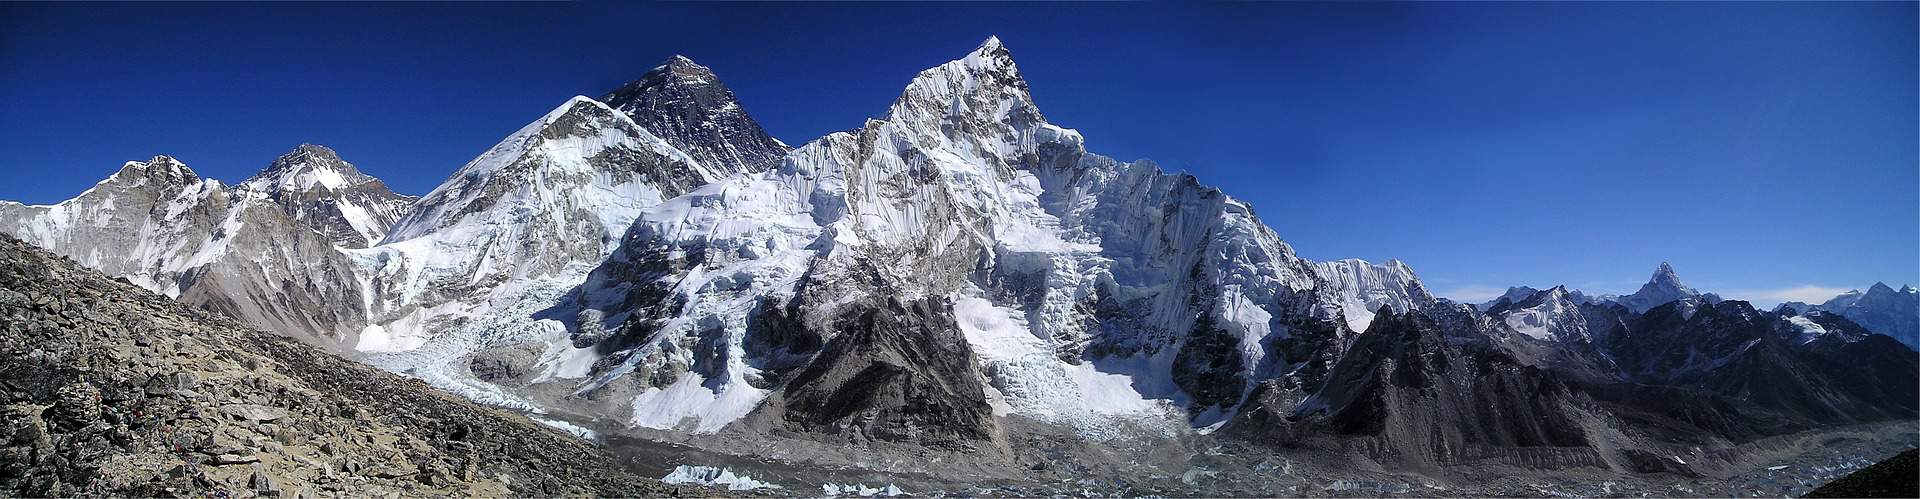 Sommità della montagna dell'Everest dell'Himalaya